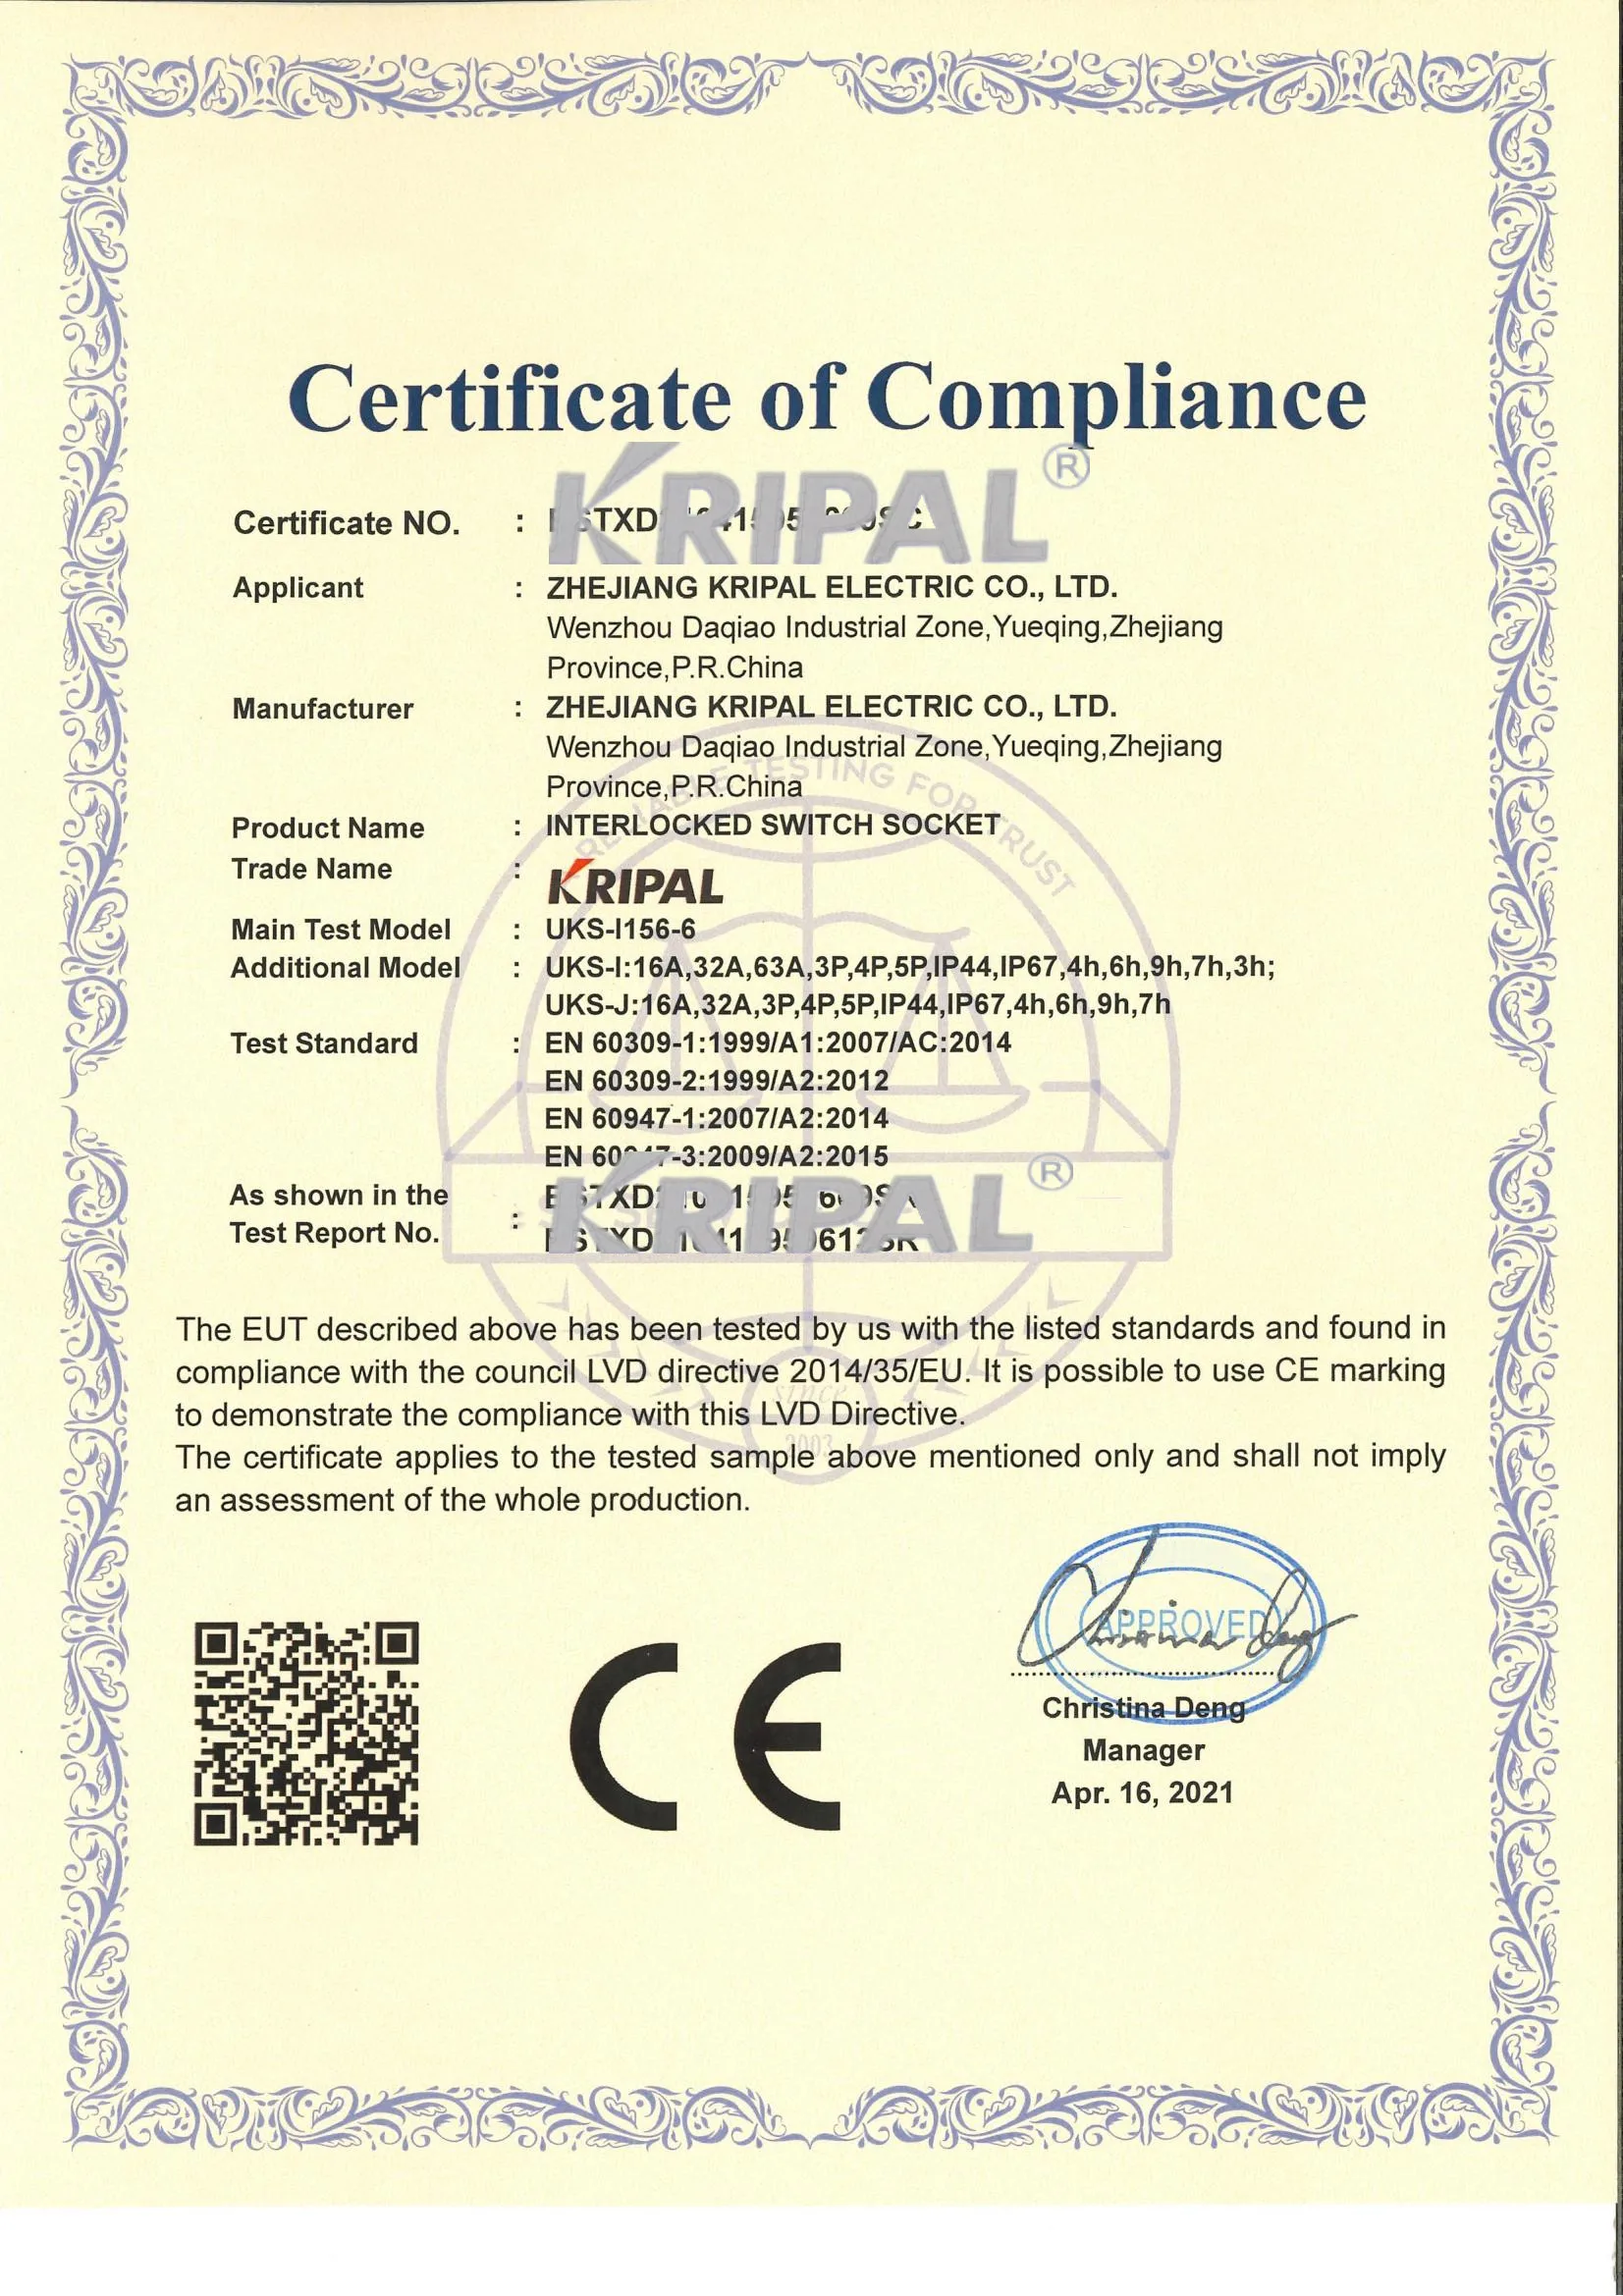 Zhejiang Kripal Electric Co., Ltd.